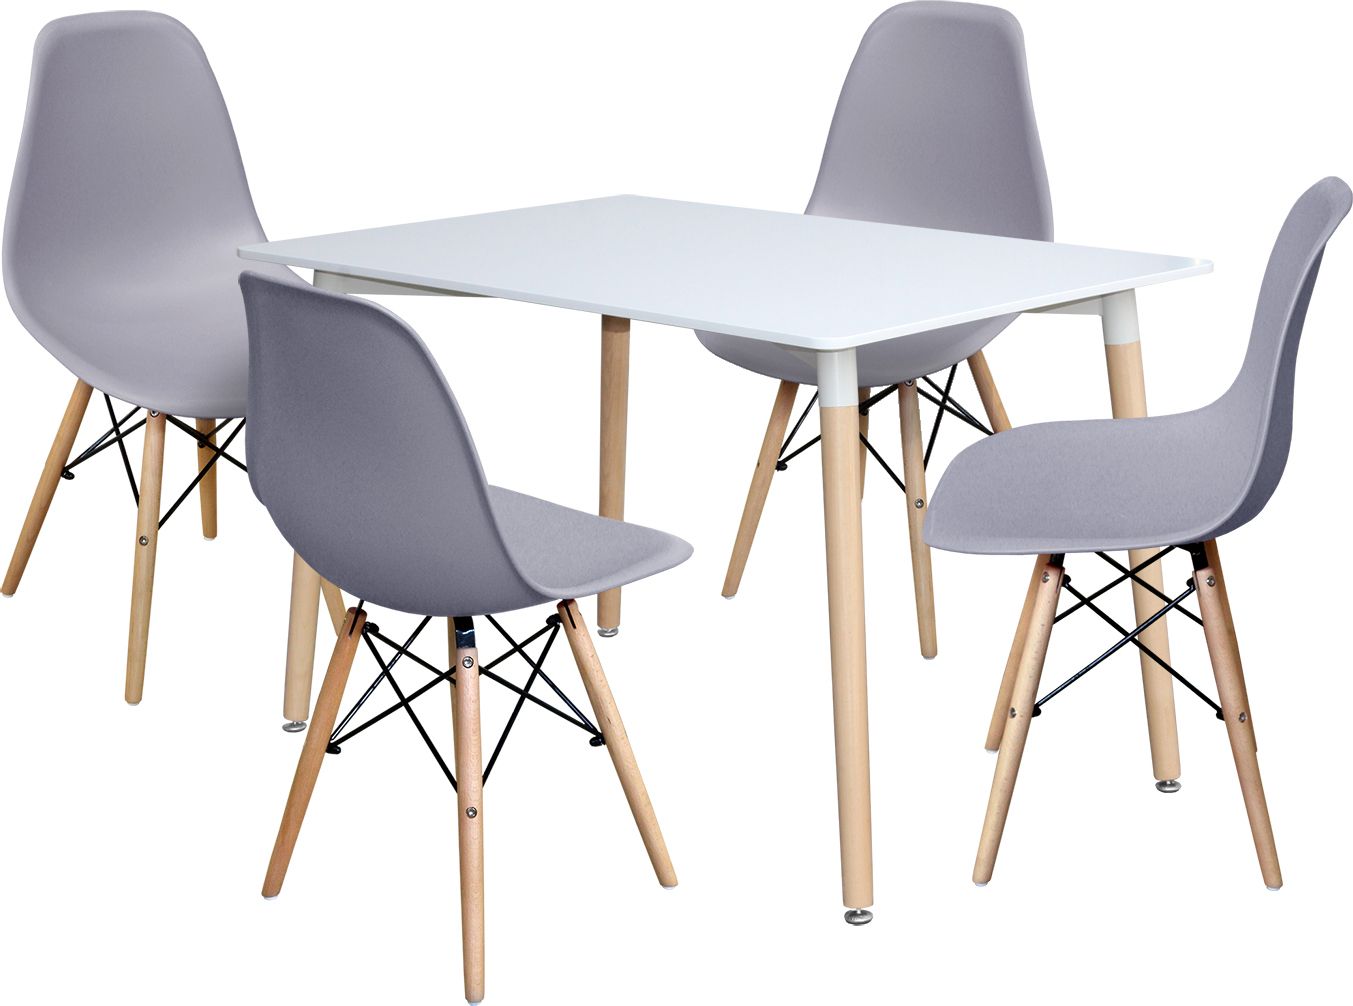 Jídelní stůl 120x80 UNO bílý + 4 židle UNO šedé Mdum - M DUM.cz